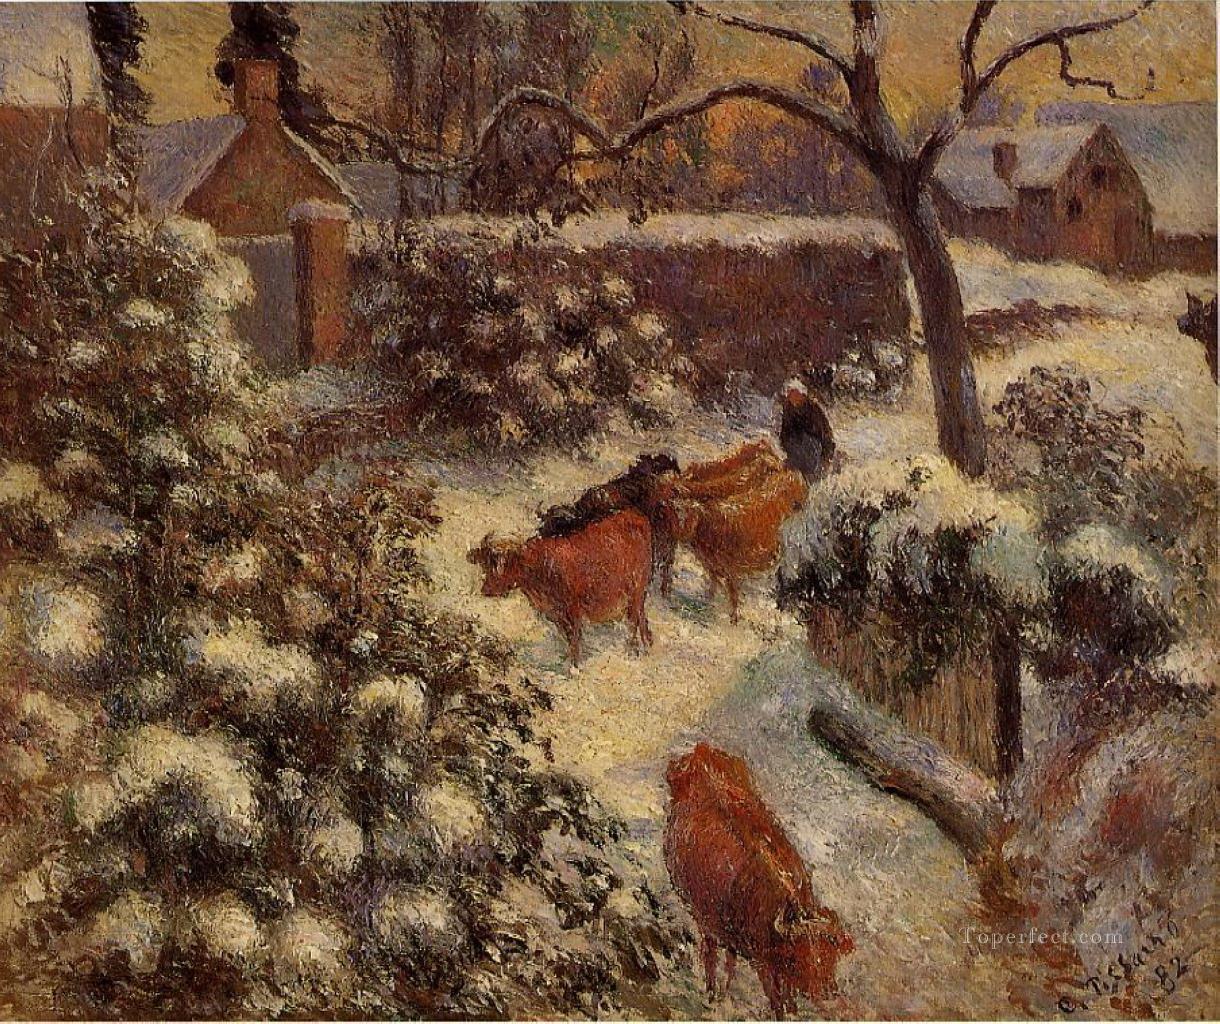 モンフーコー 1882 カミーユ ピサロの雄牛の雪の効果油絵